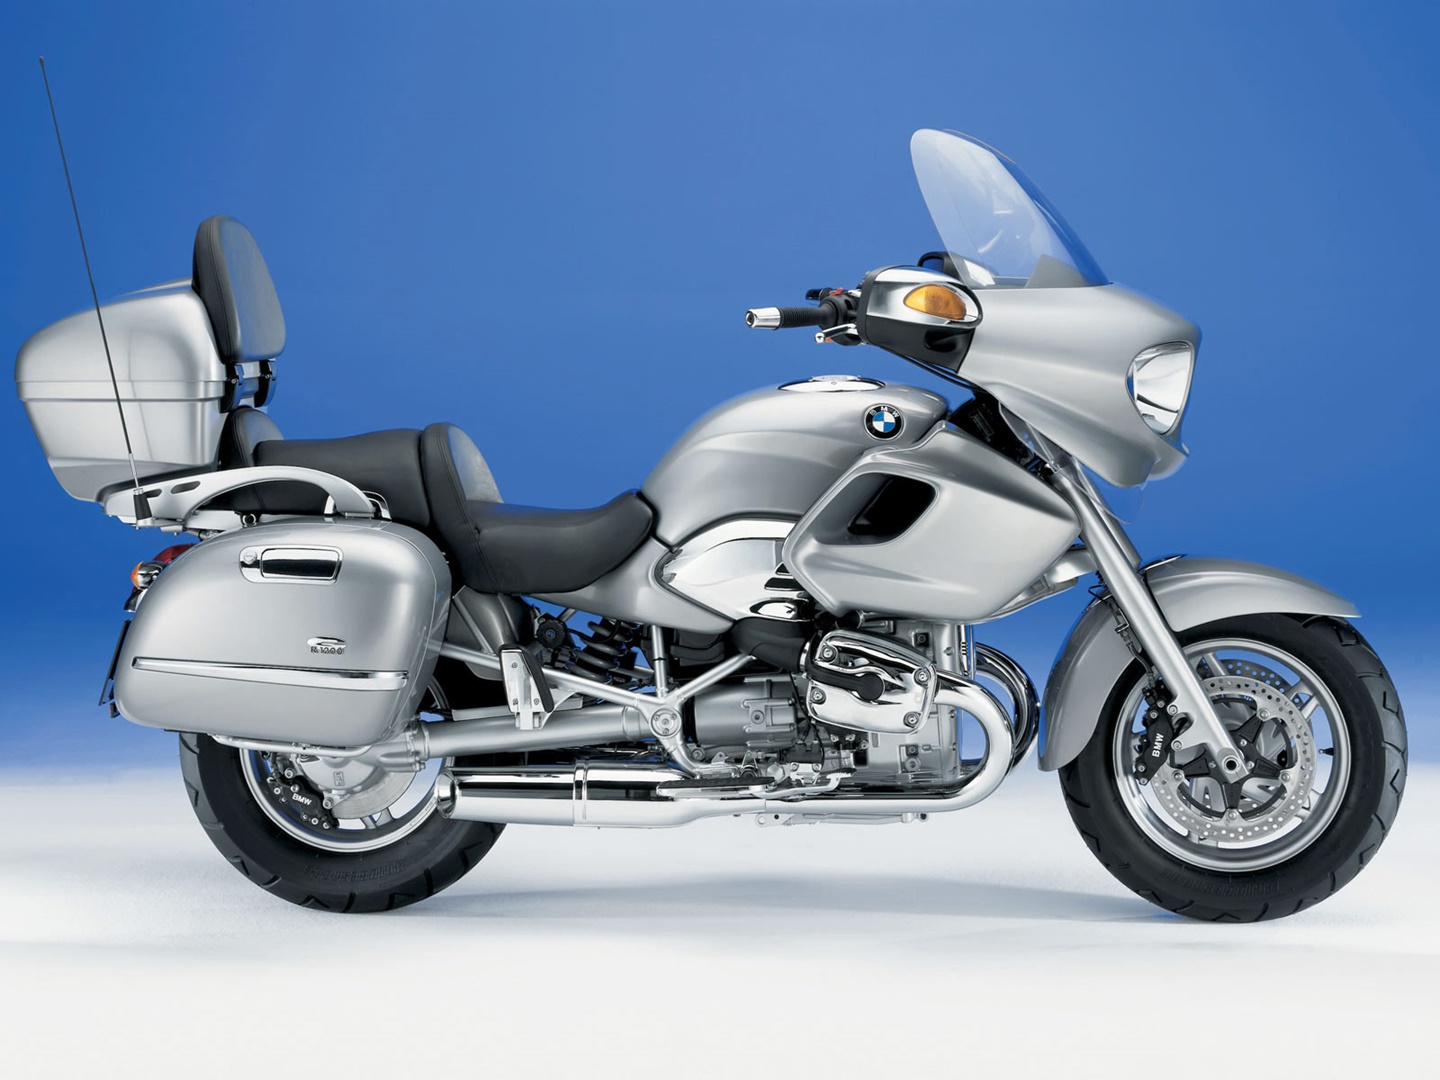 Tranquilidad de espíritu cirujano promesa Moto del día: BMW R 1200 CL espíritu RACER moto